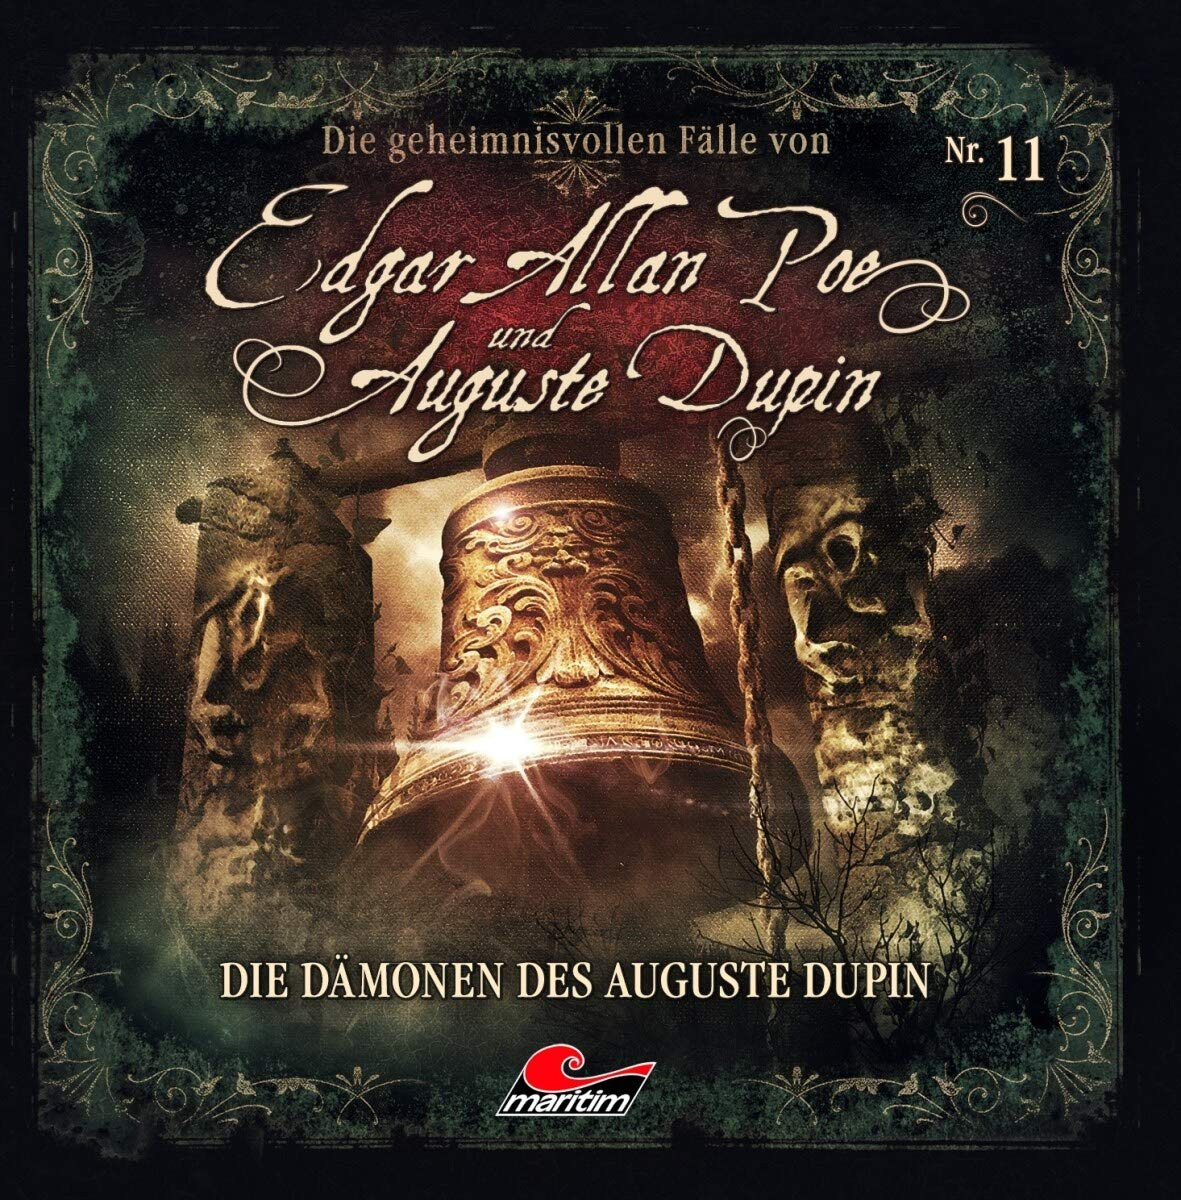 Die geheimnisvollen Fälle von Edgar Allan Poe und Auguste Dupin - Folge 11: Die Dämonen des Auguste Dupin